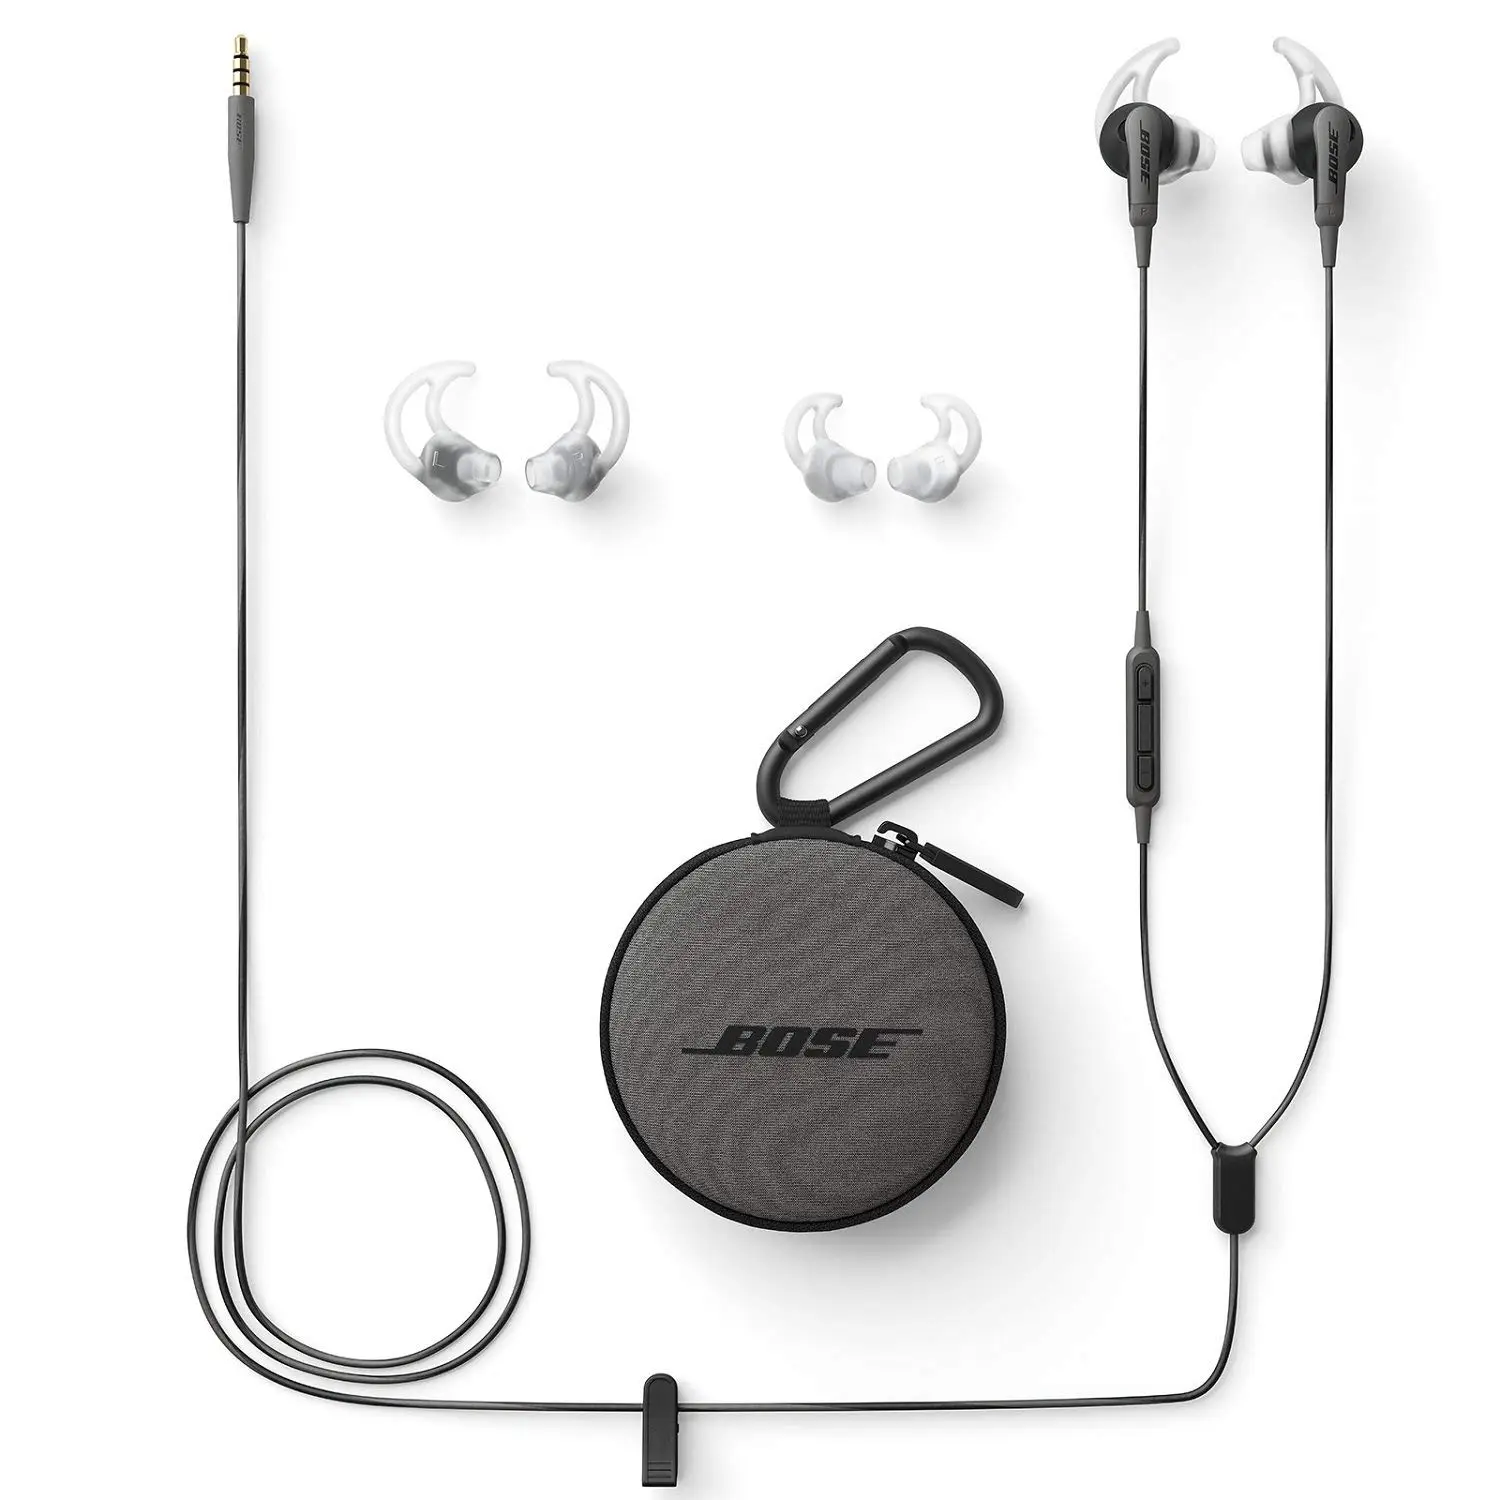 Ecouteurs pas cher - Les écouteurs Bose SoundSport à 49 €